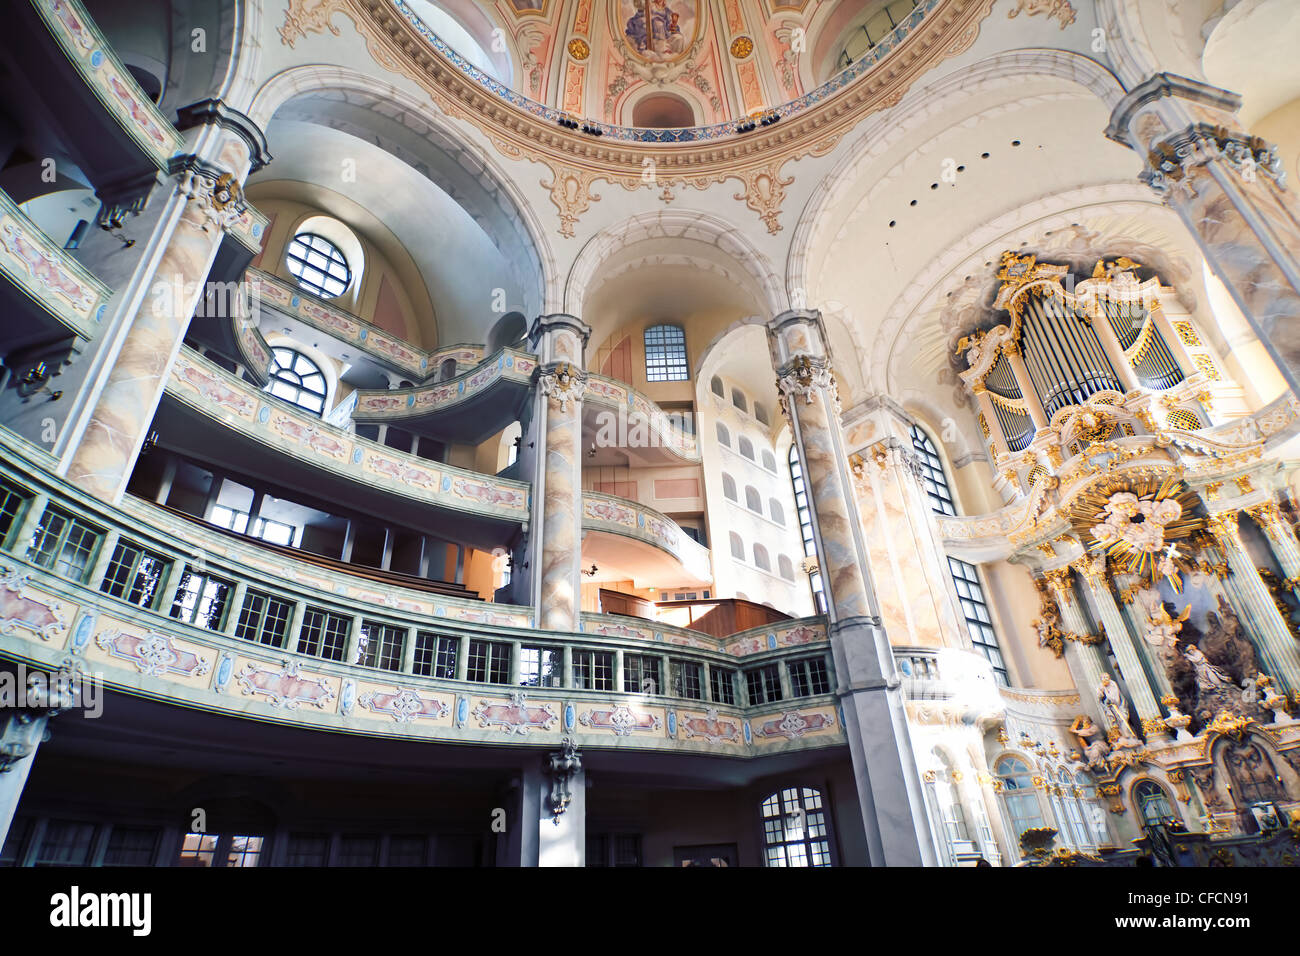 L'intérieur de l'église Frauenkirche à Dresde - Allemagne Banque D'Images